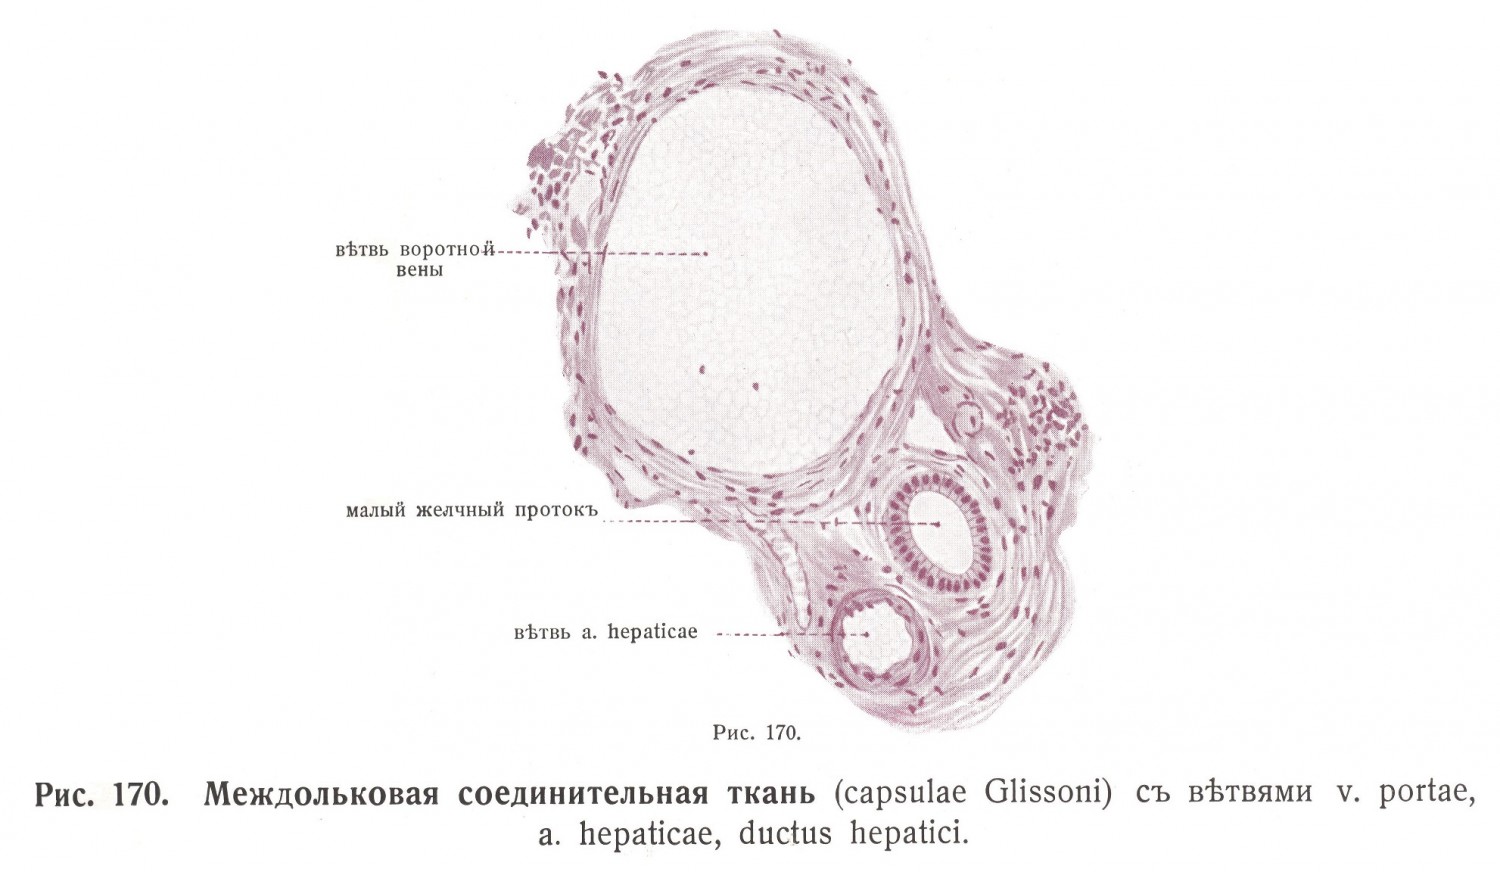 Междольковая соединительная ткань capsulae Glissoni